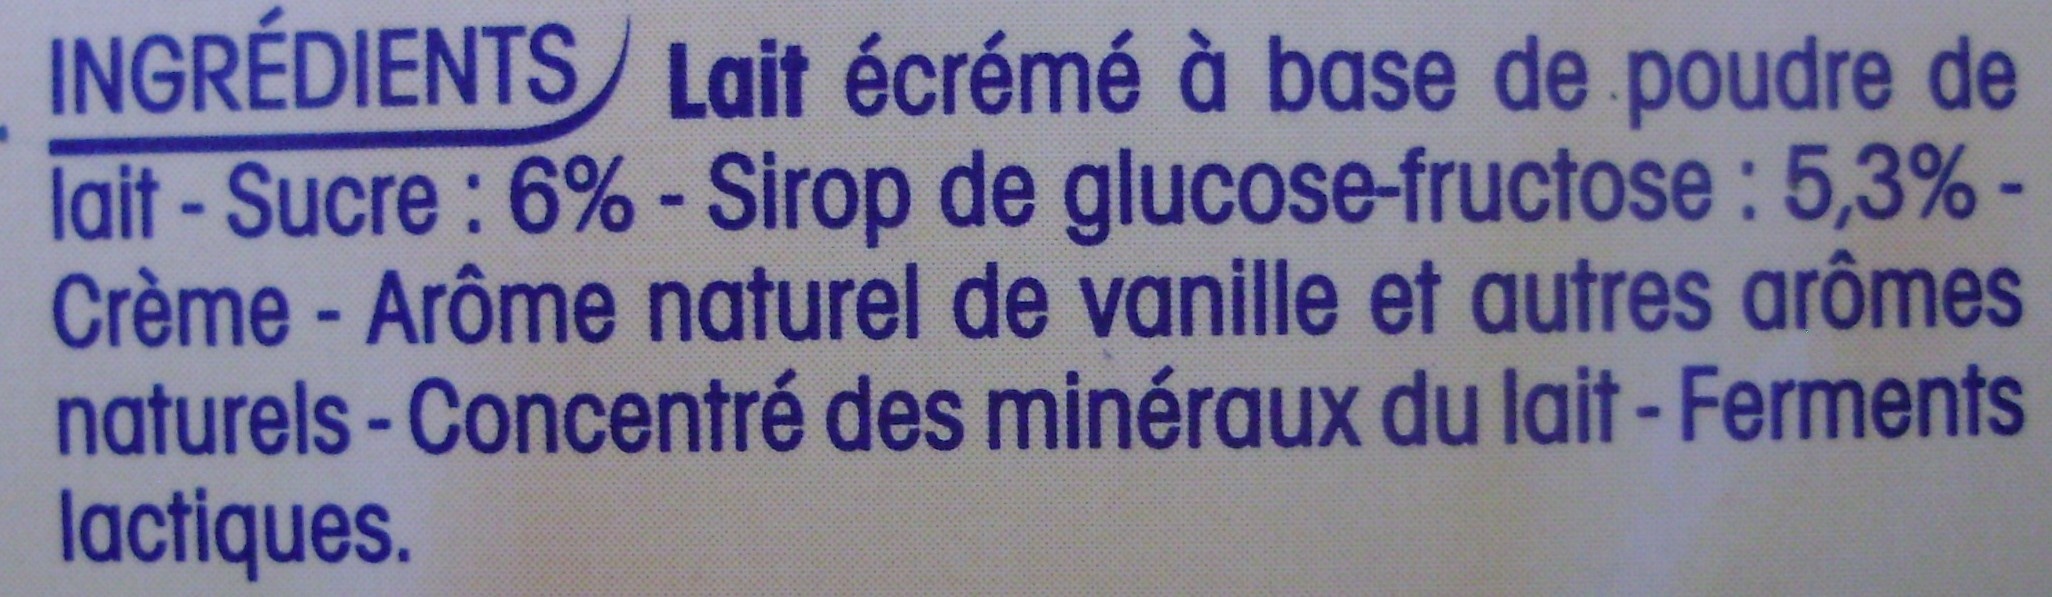 P'tit Yop, Goût Vanille (Offre €co) - Ingredients - fr